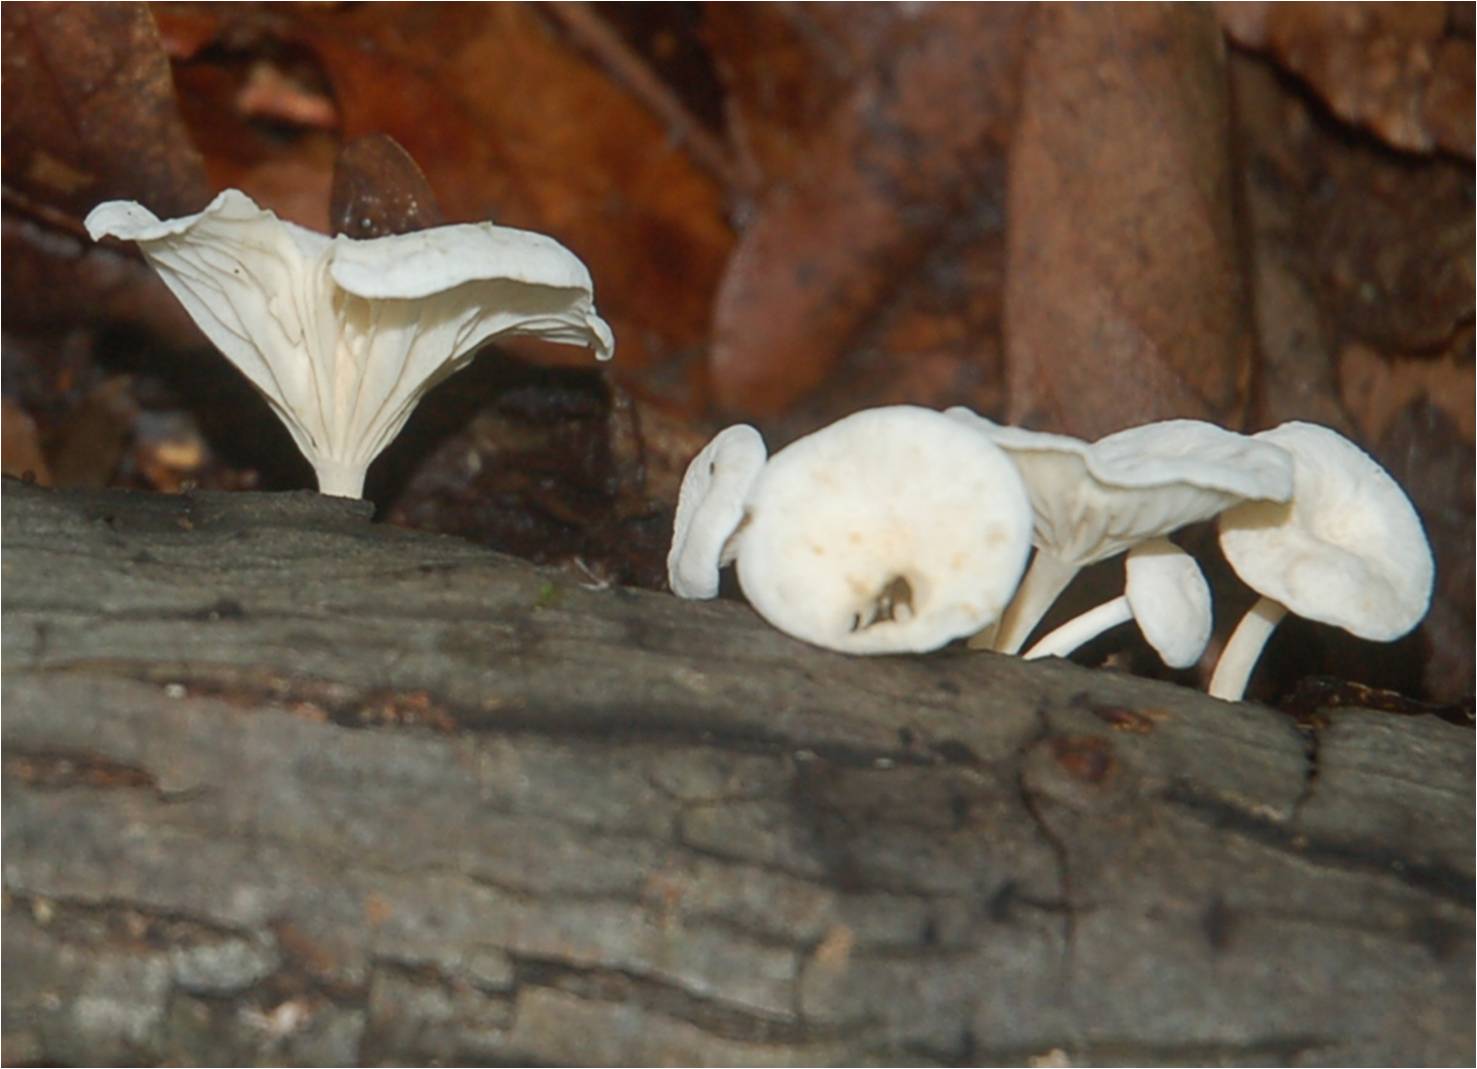 Fungus at ECWA's Glennstone preserve